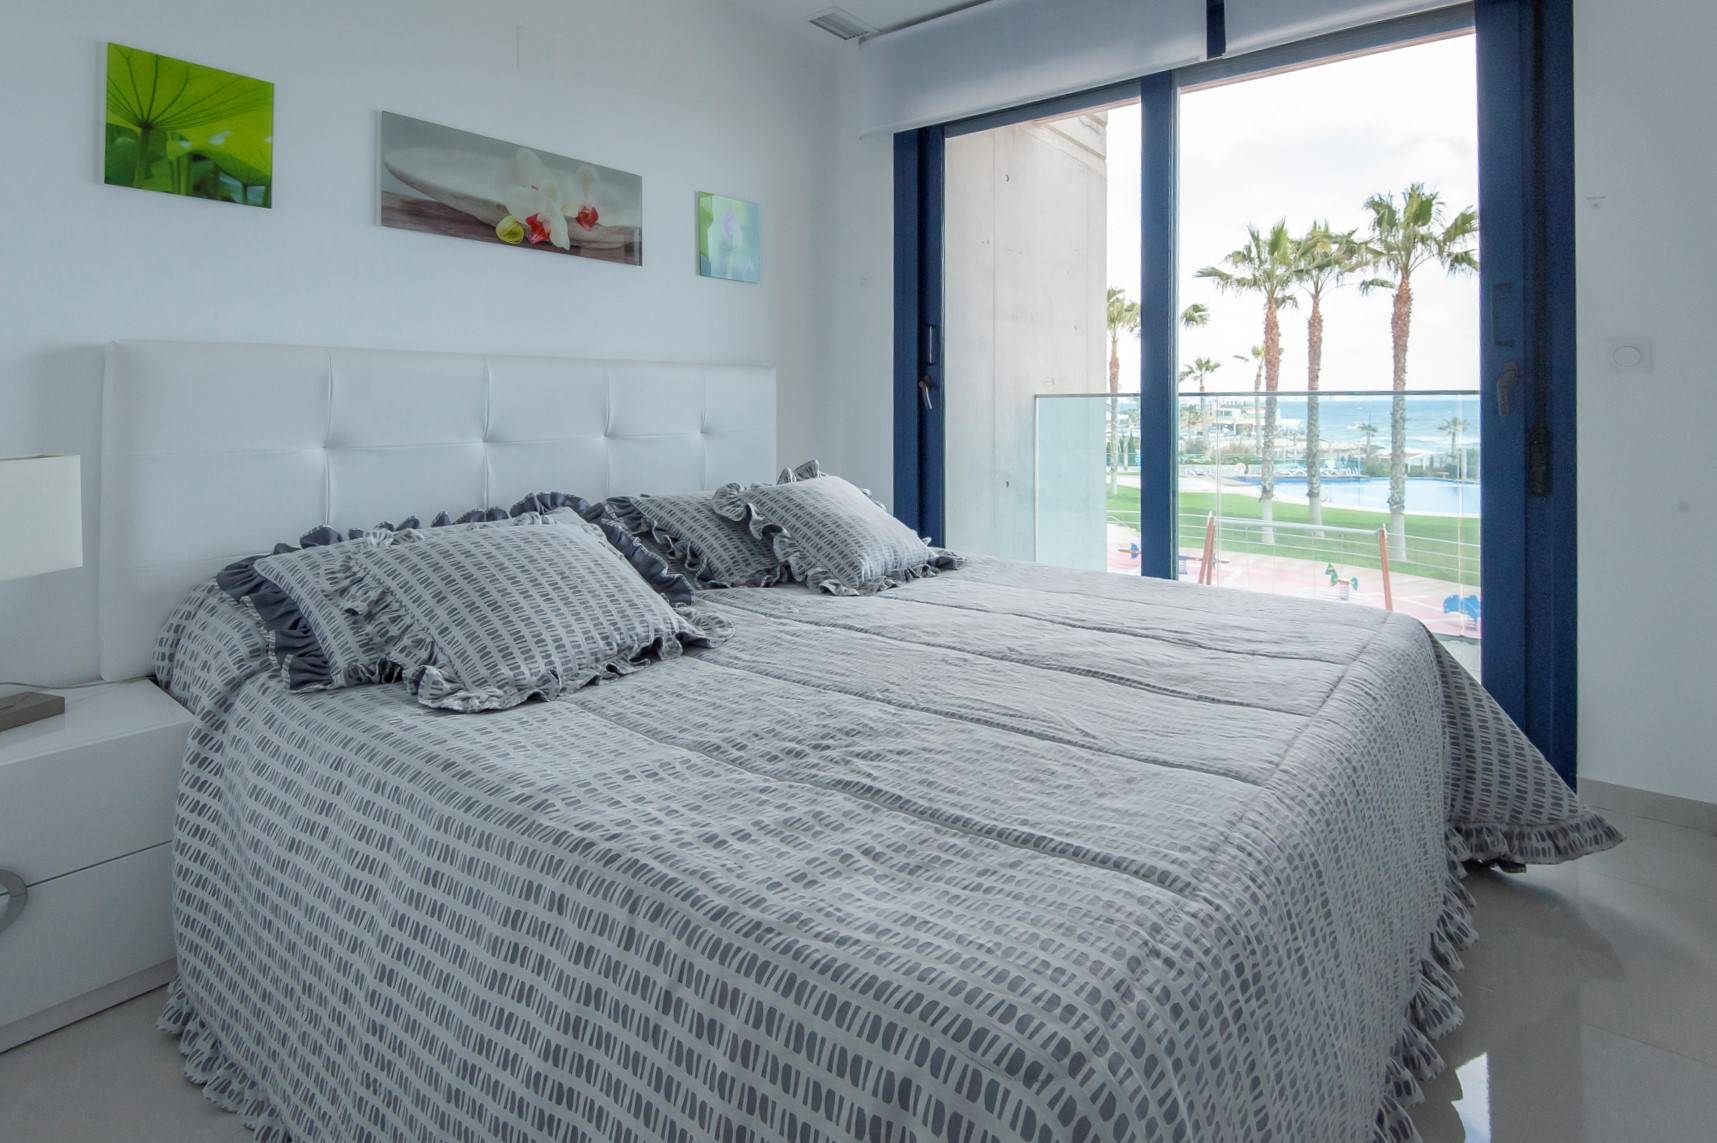 Et soverom med dobbeltseng og utsikt til en strand med palmer